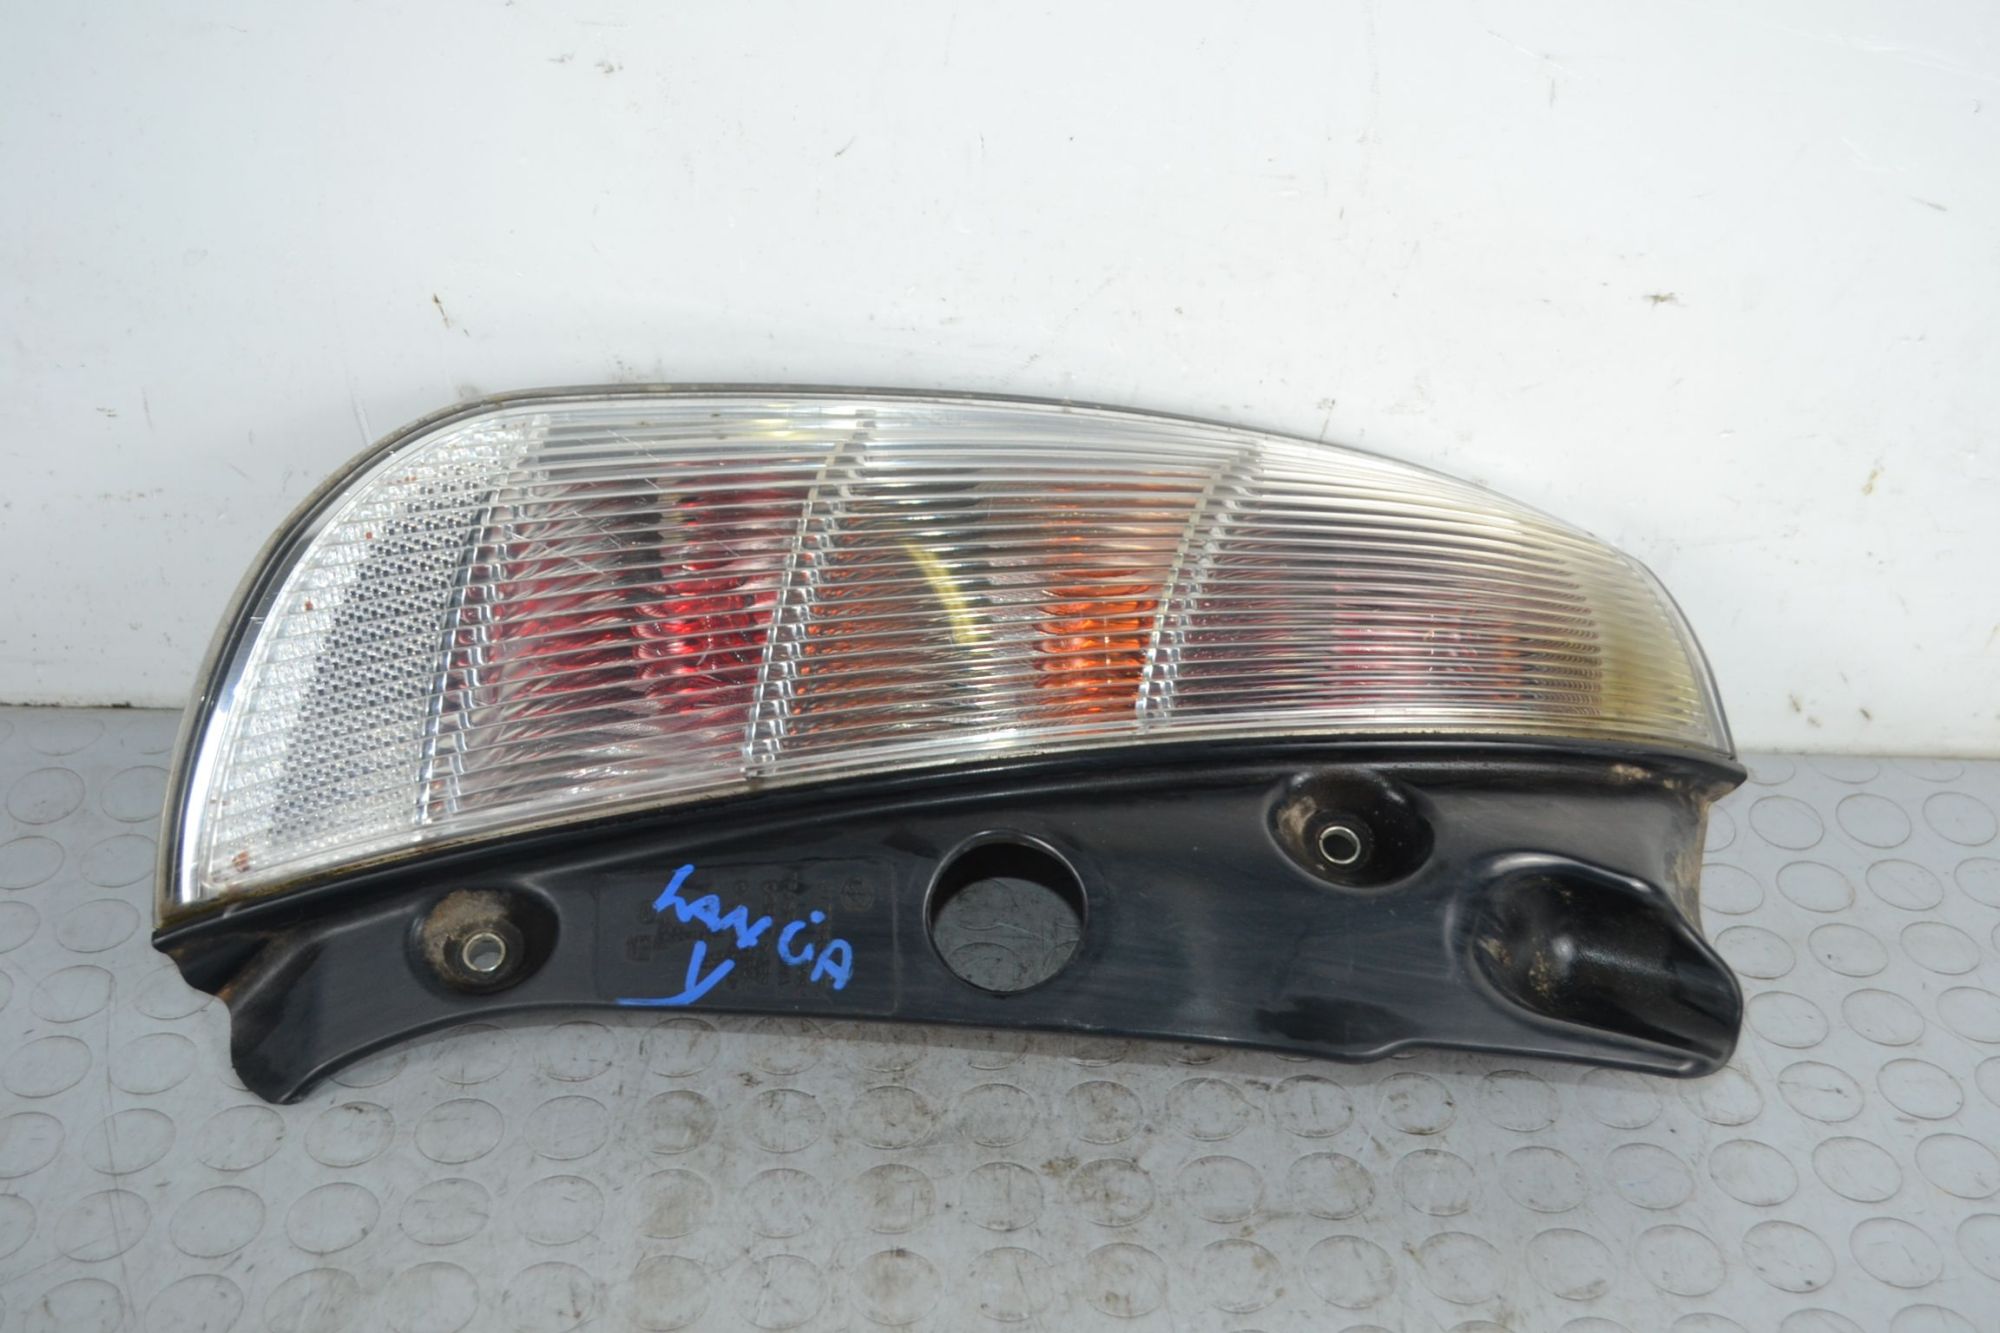 Fanale stop posteriore SX Lancia Ypsilon Dal 2008 al 2011 Cod 51786658 Senza portalampada  1702985443672